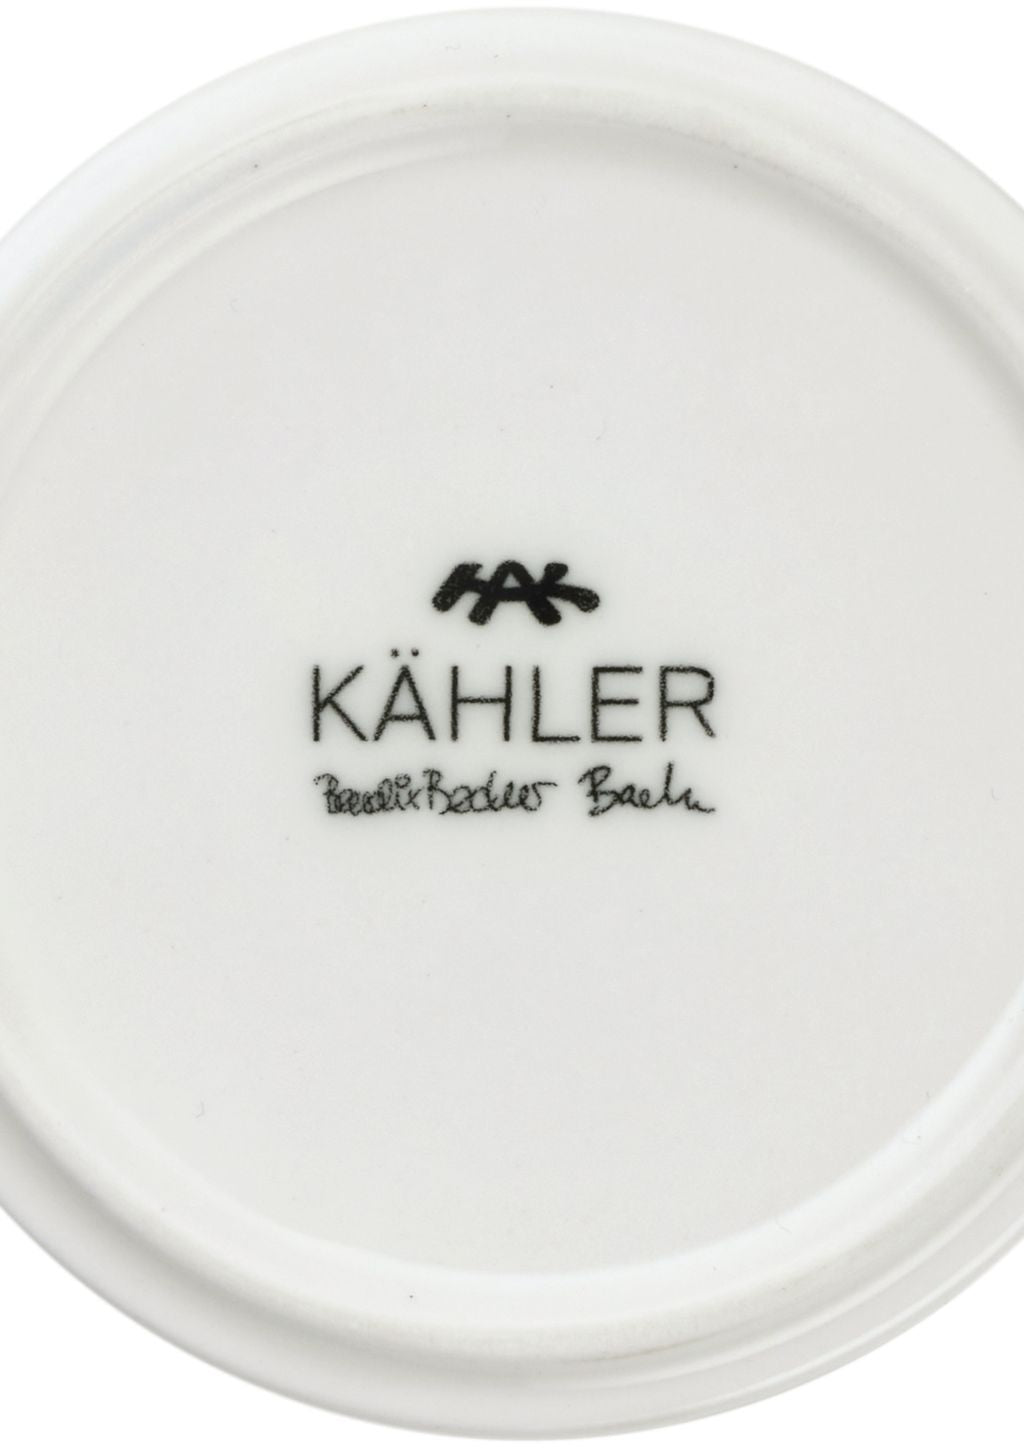 Kähler Nobili Tealight Hort High H25.5 cm, or